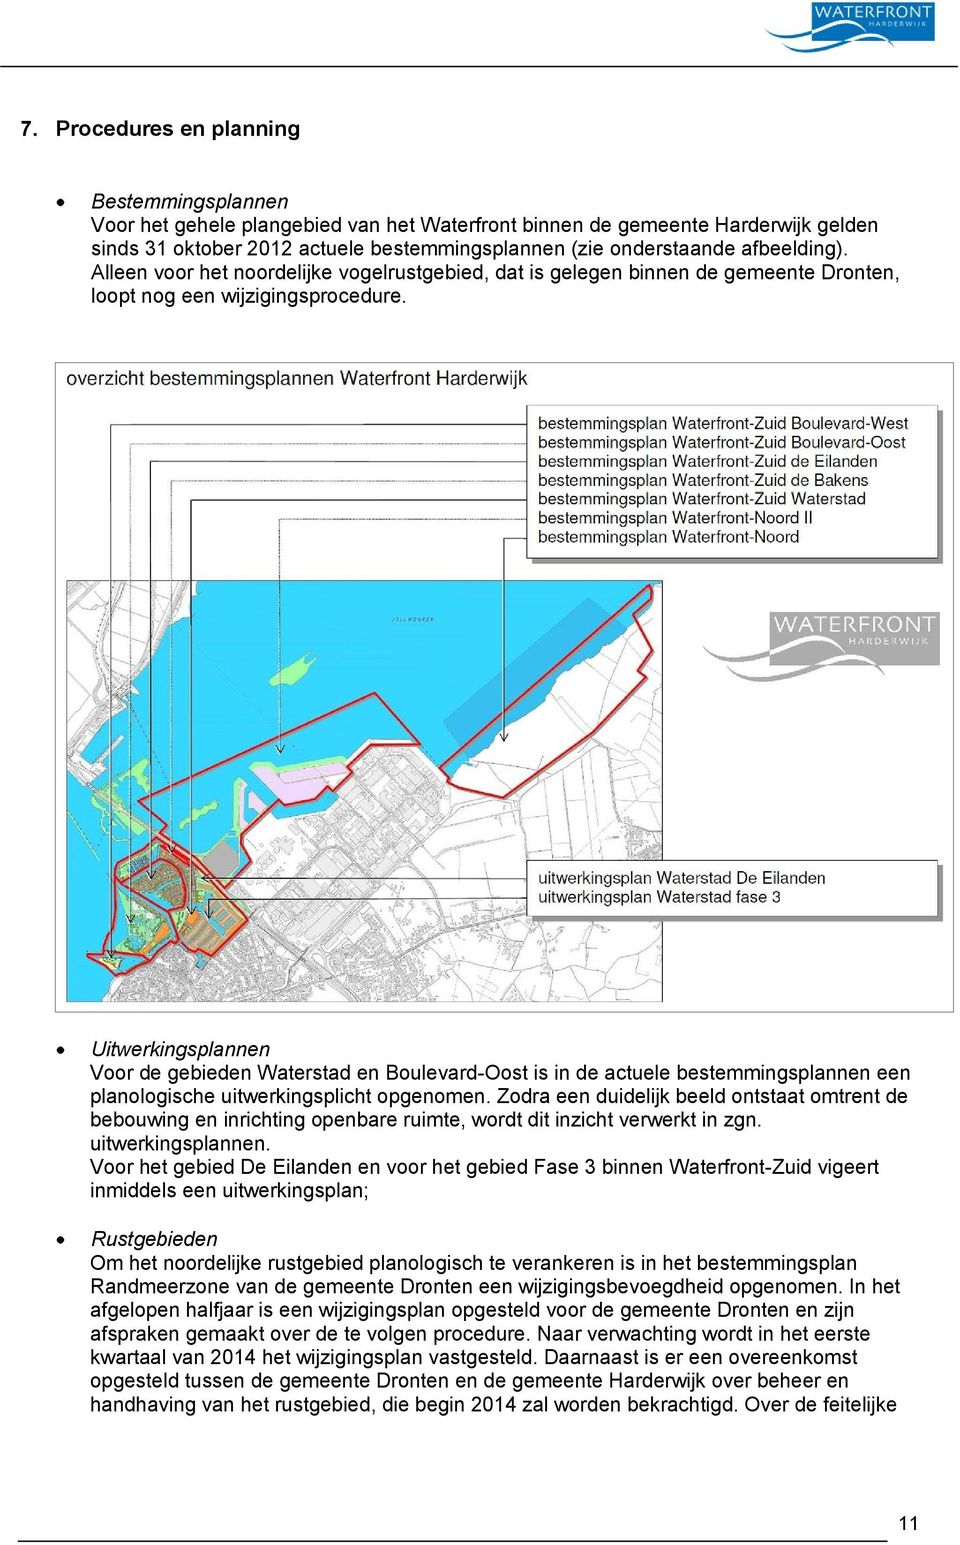 Uitwerkingsplannen Voor de gebieden Waterstad en Boulevard-Oost is in de actuele bestemmingsplannen een planologische uitwerkingsplicht opgenomen.